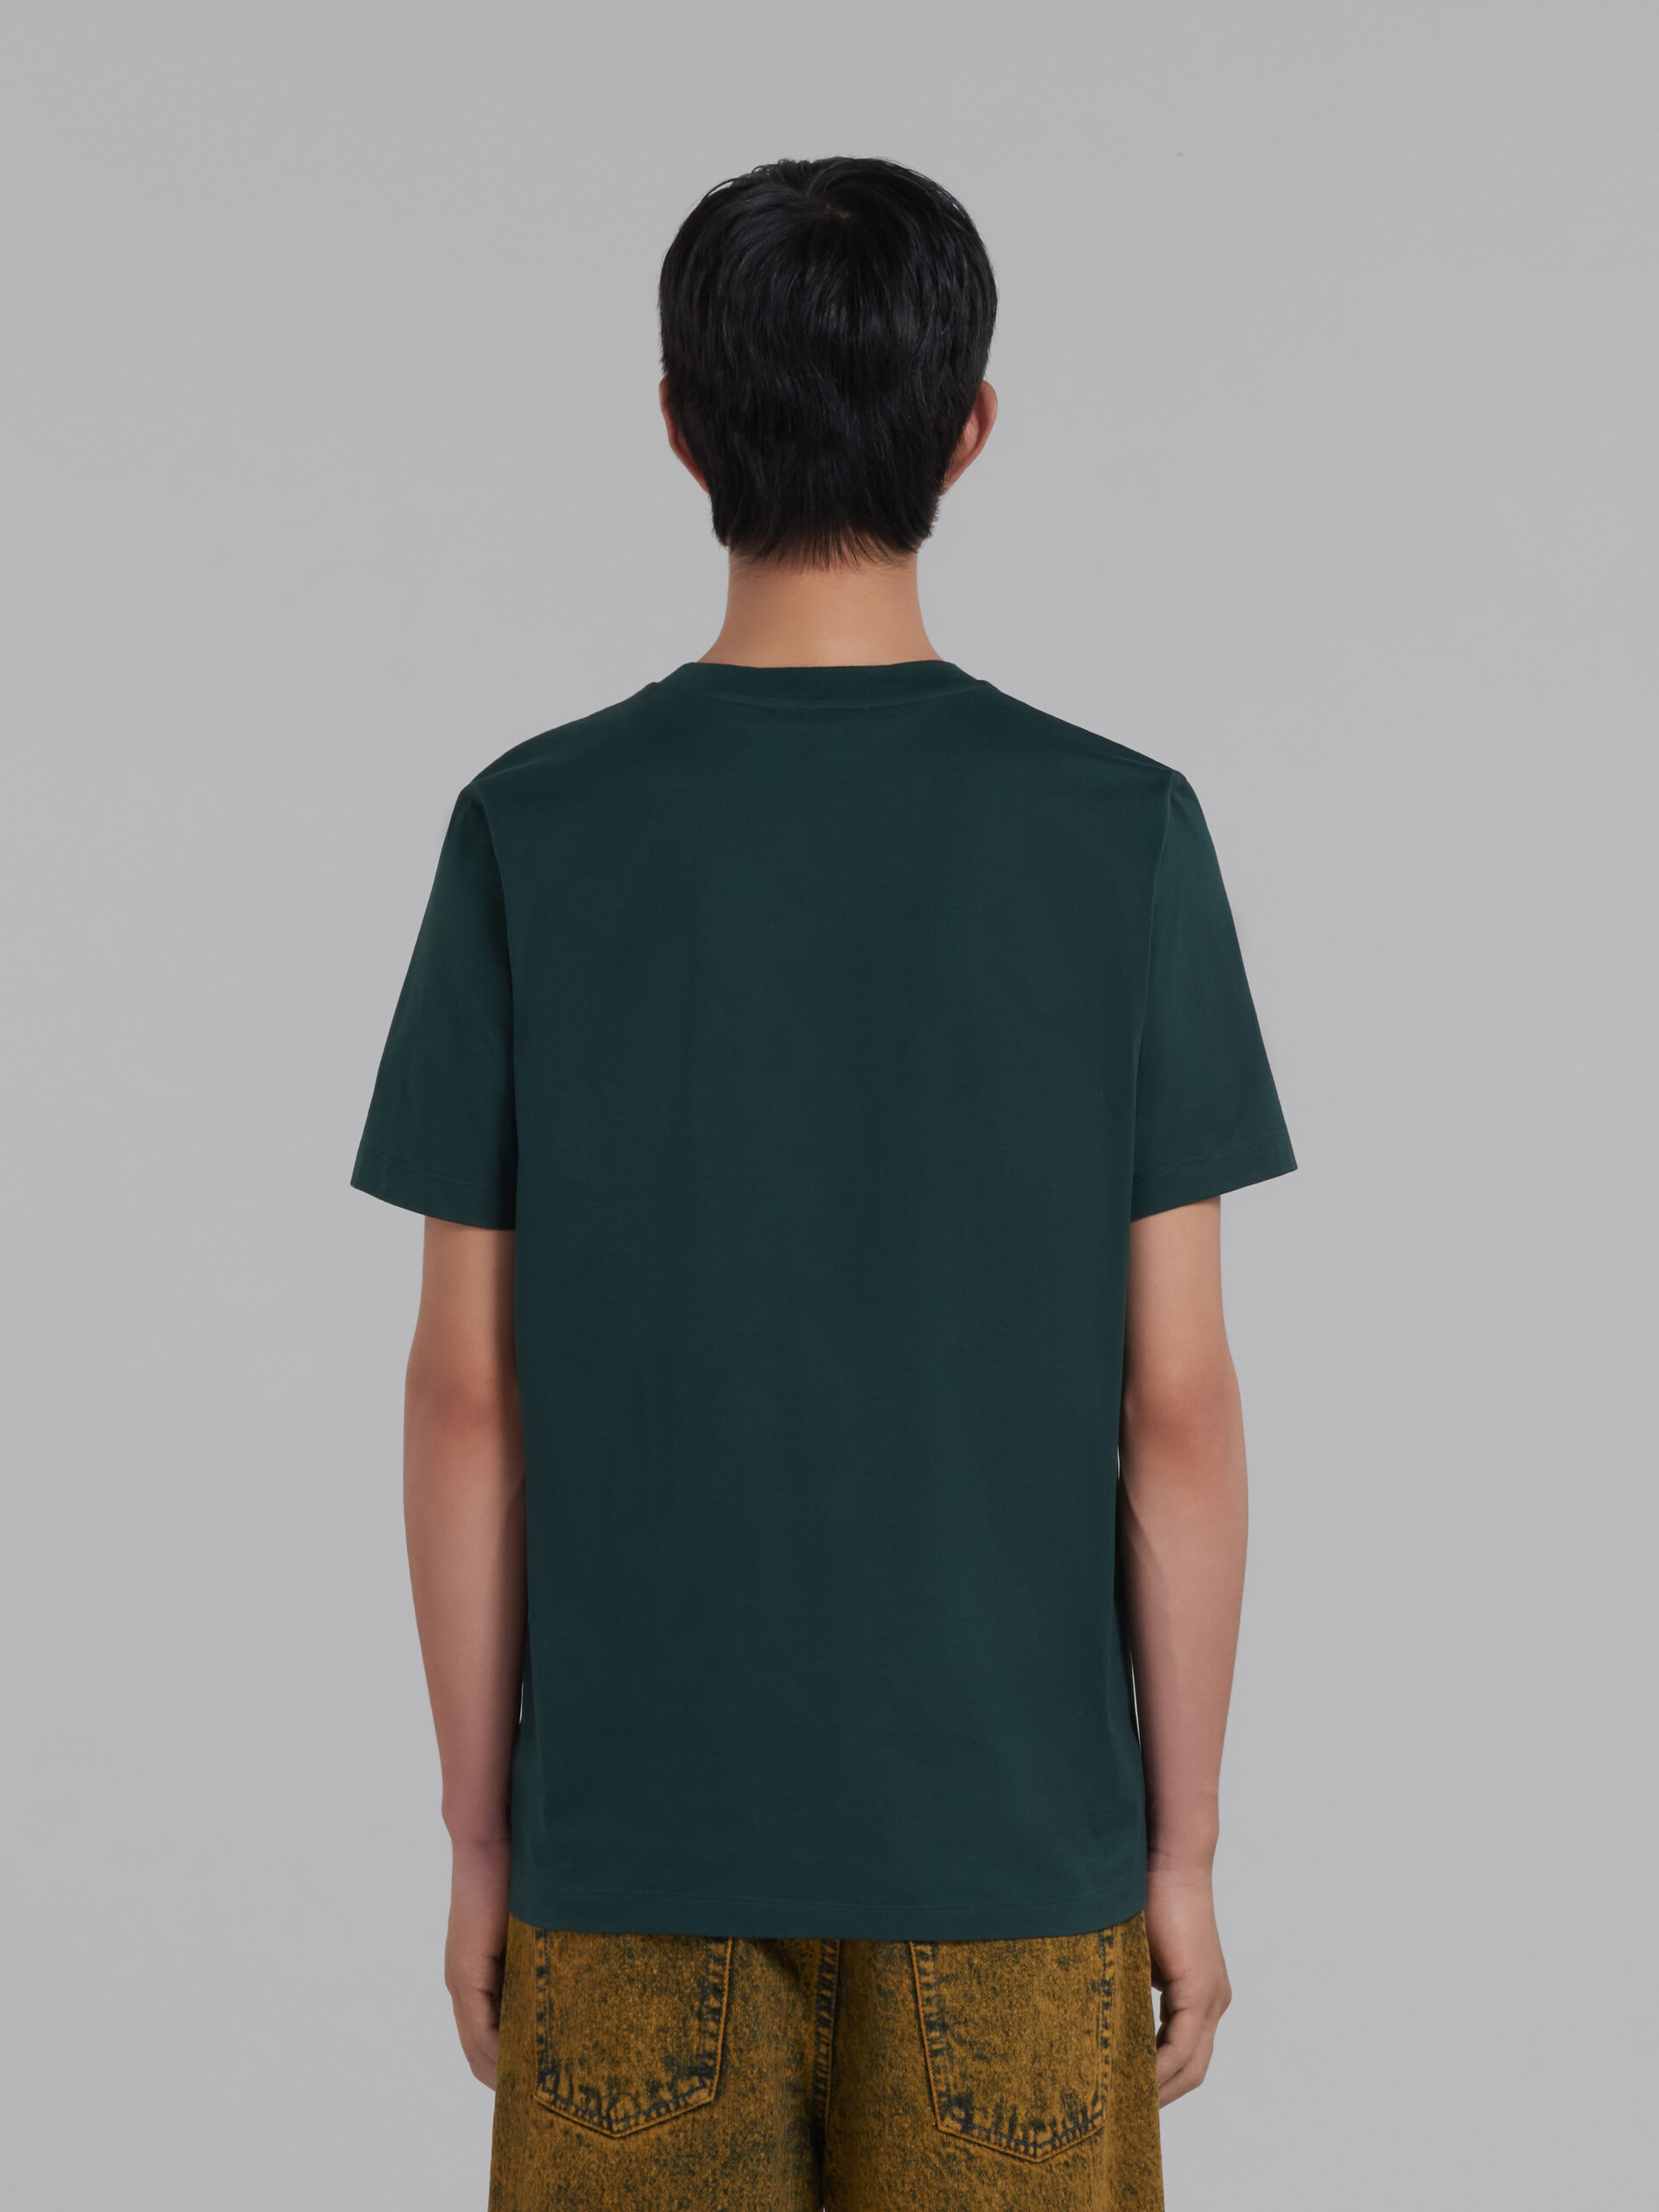 Grünes T-Shirt aus Bio-Baumwolle mit Marni-Aufnäher - T-shirts - Image 3